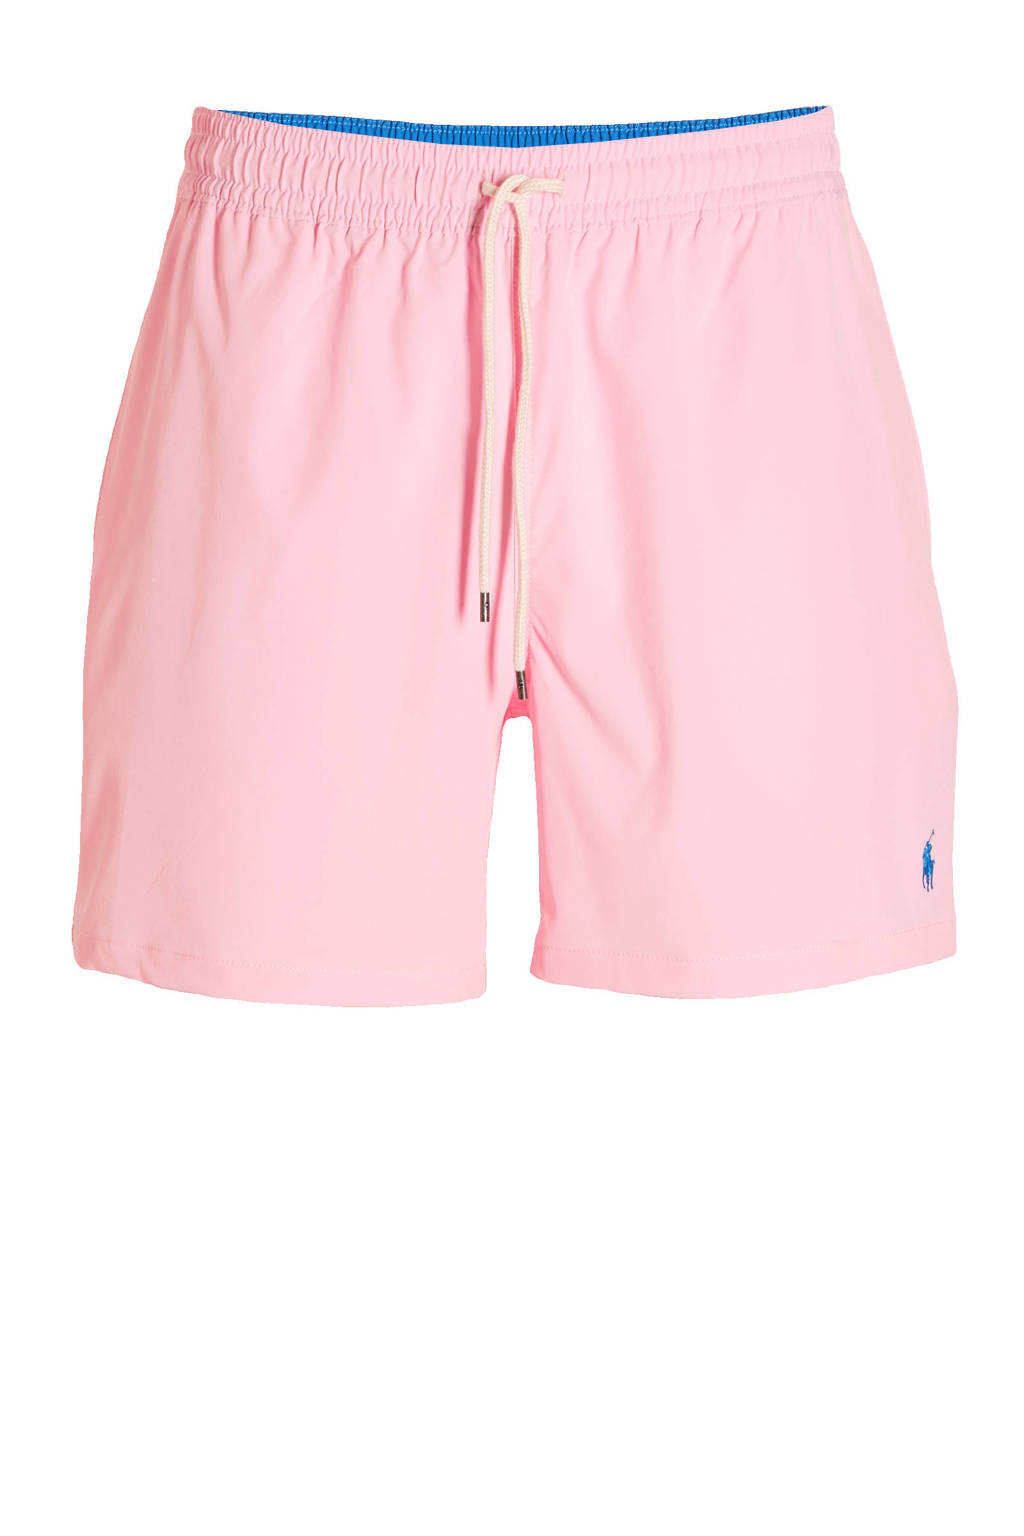 Bouwen binden Circulaire POLO Ralph Lauren zwemshort met geborduurd logo roze | wehkamp